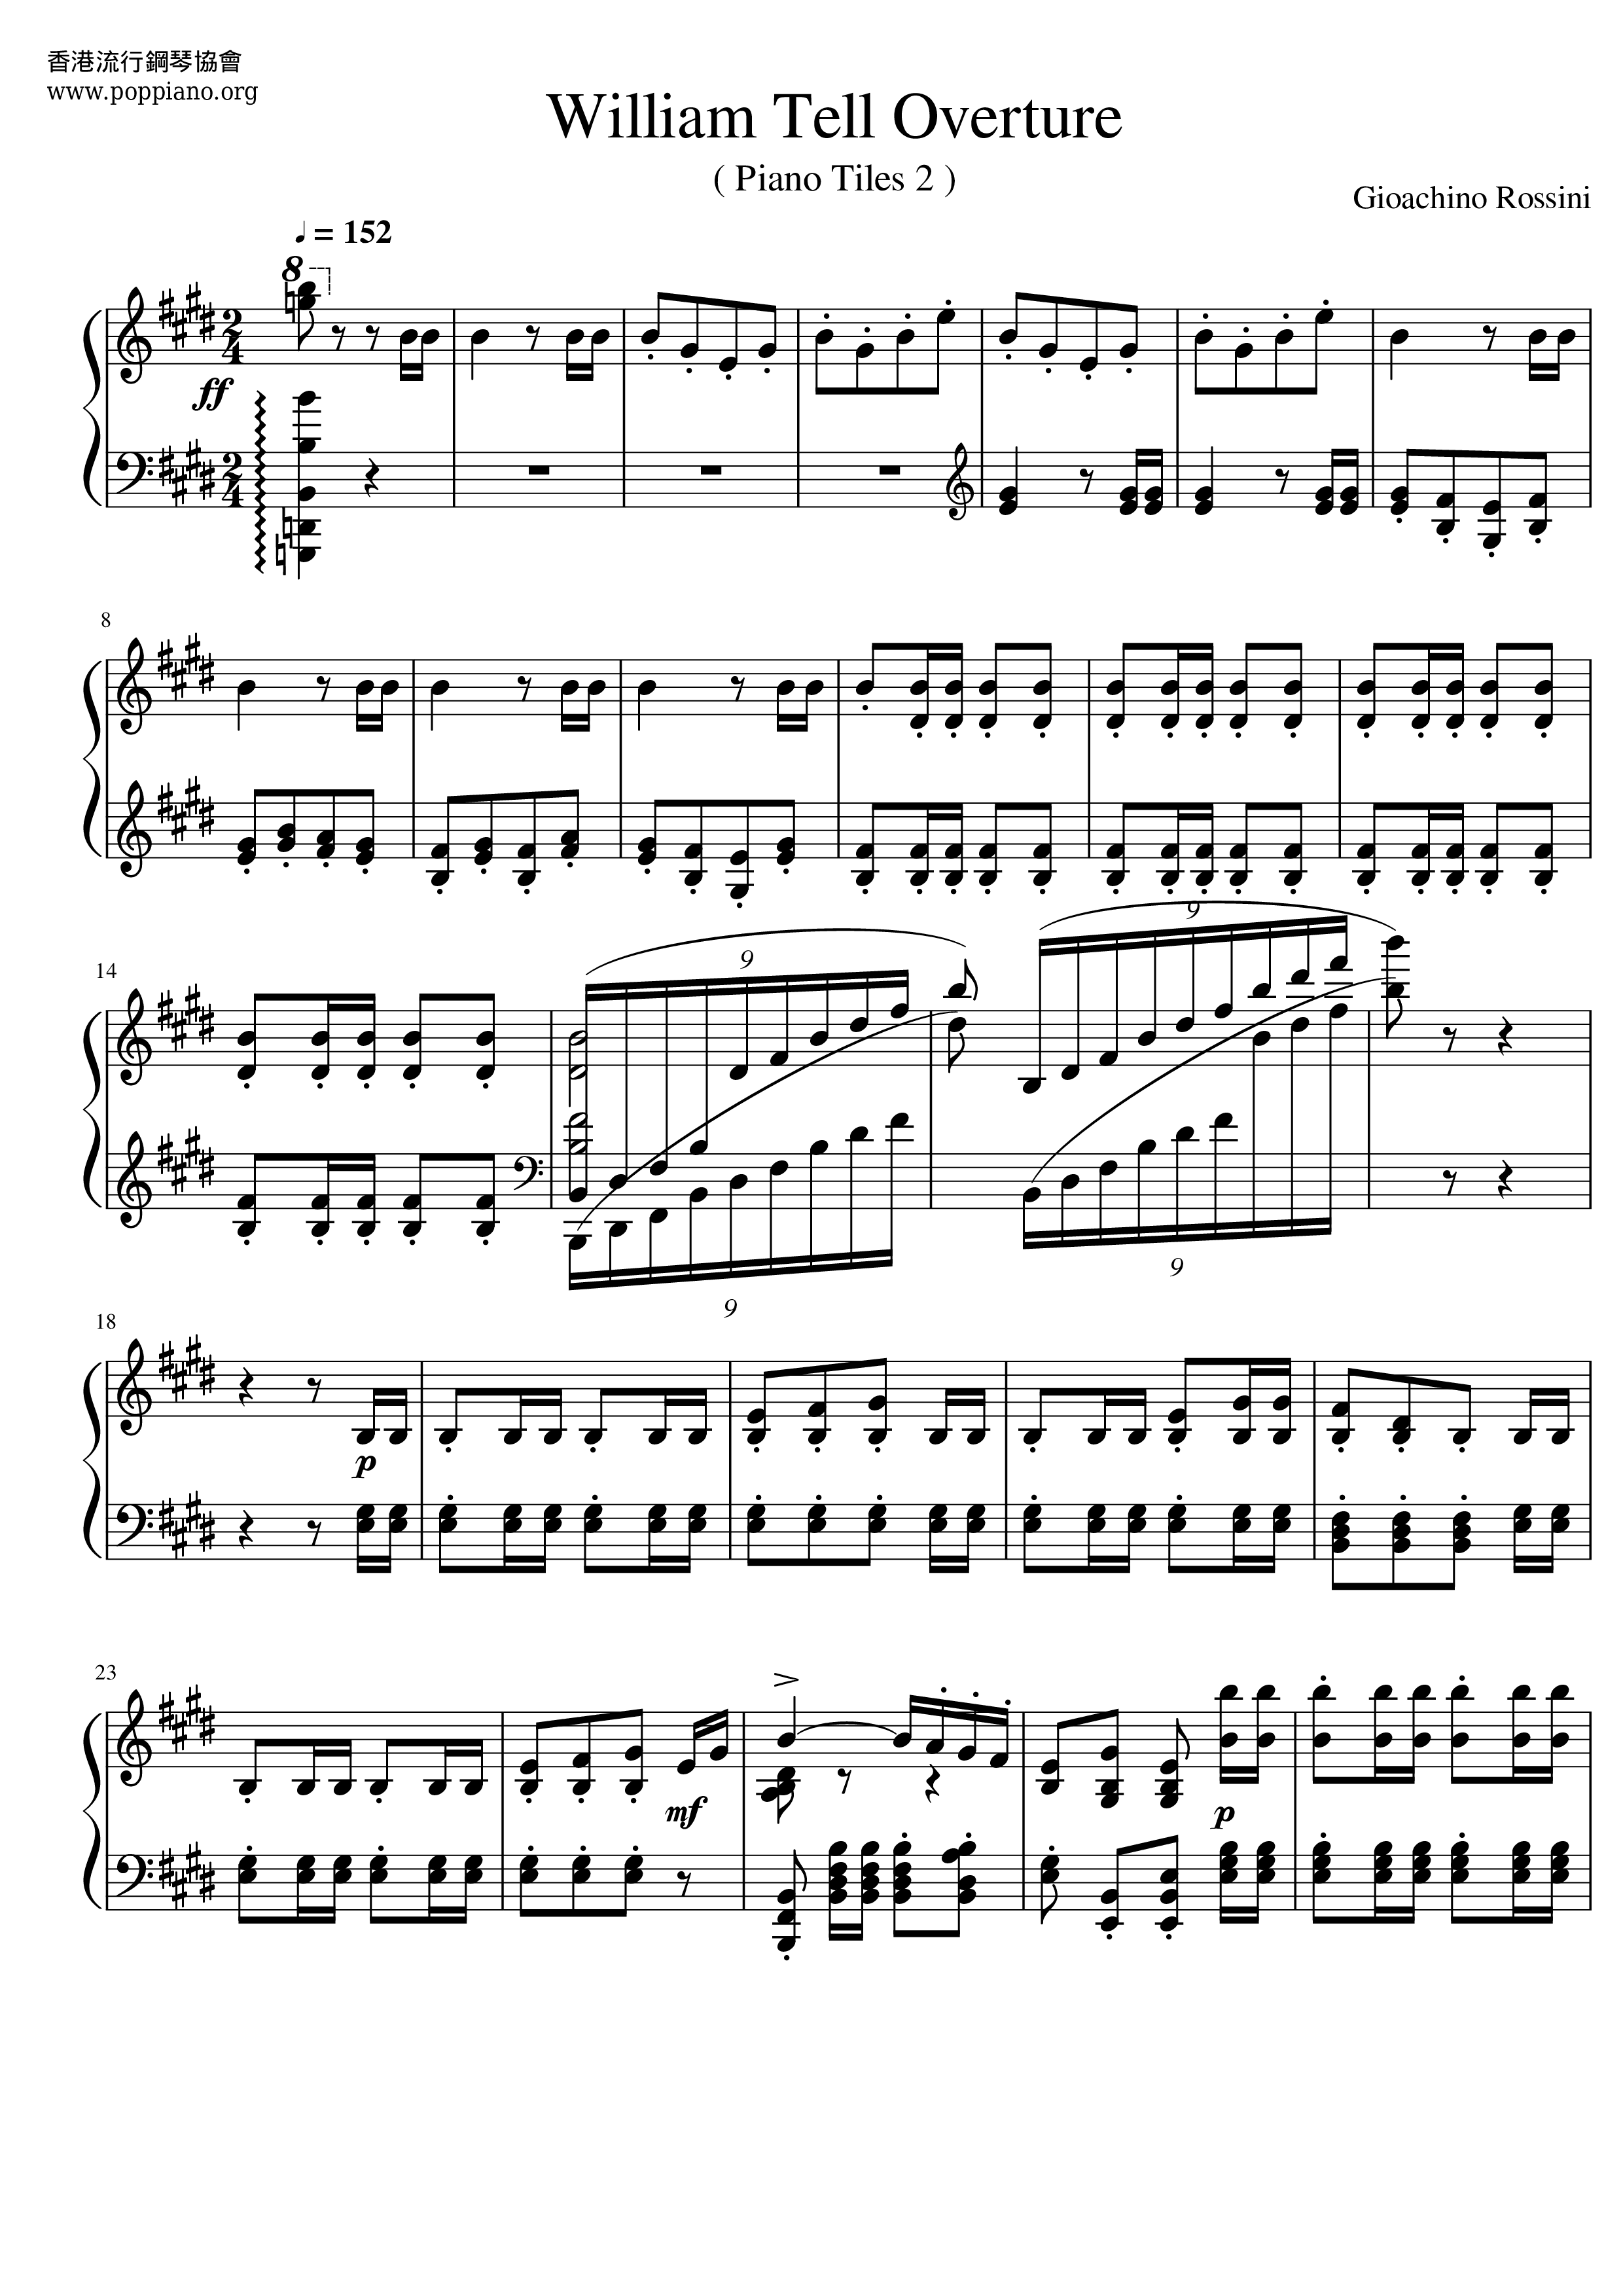 William Tell Overture Score